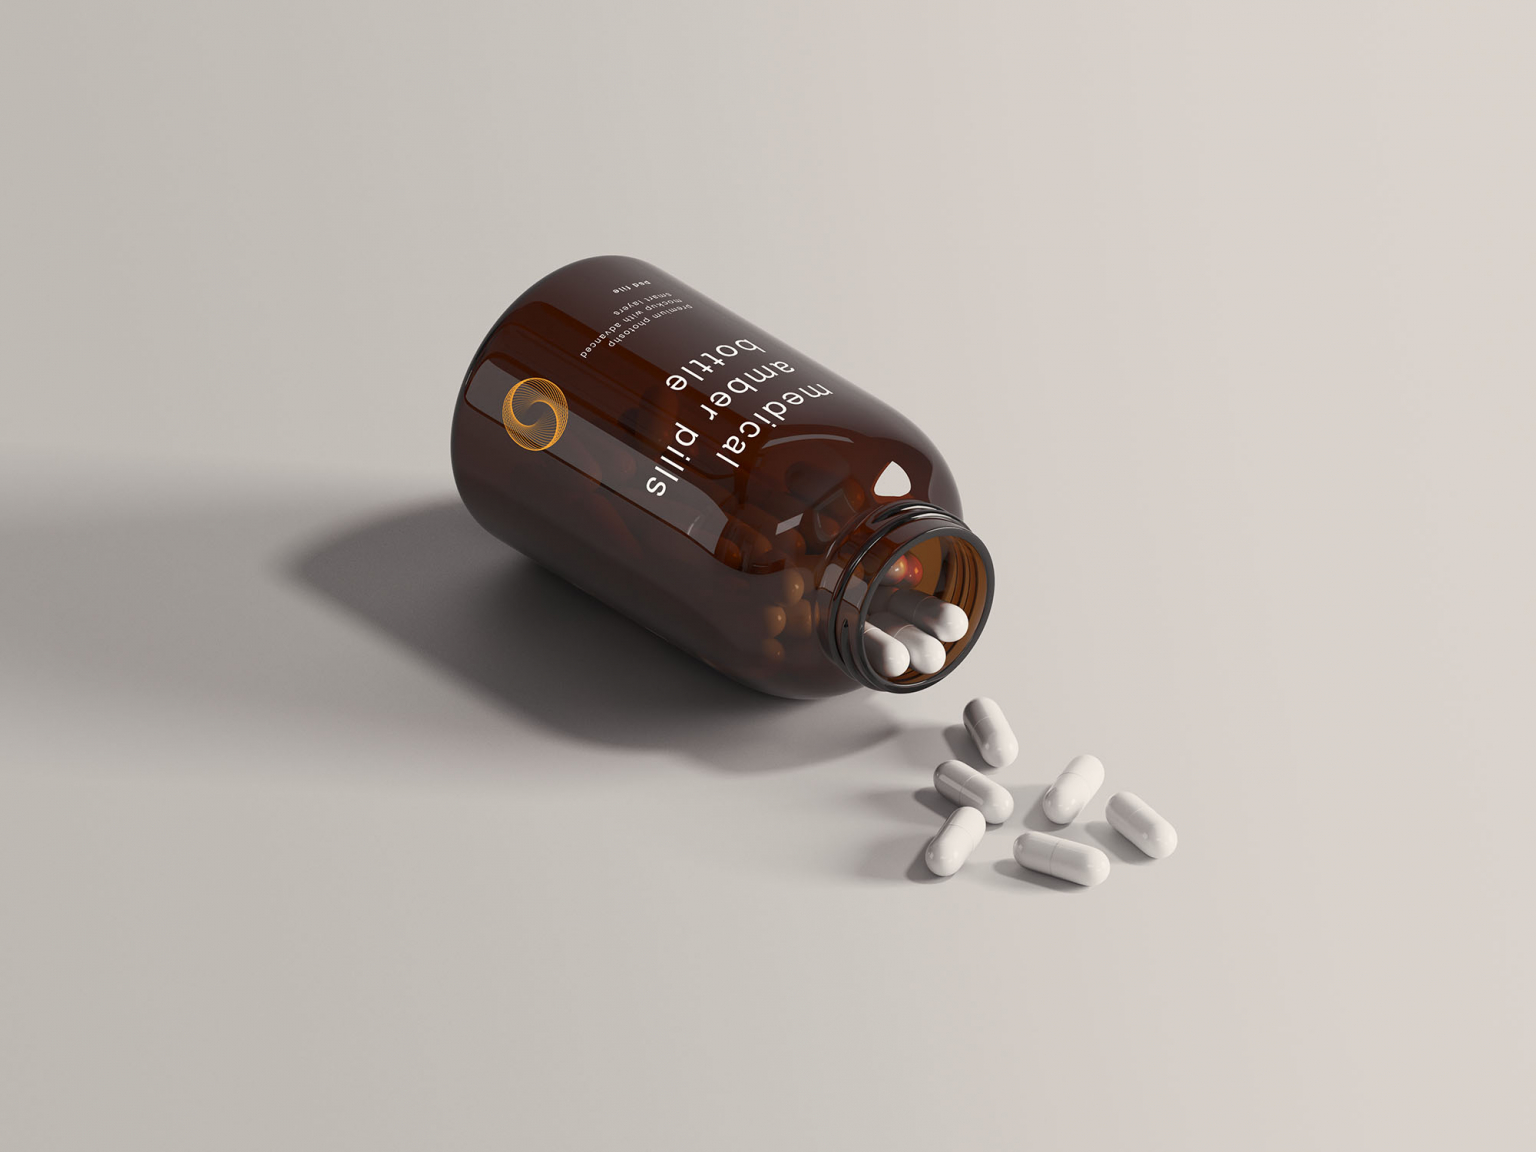 free medical pills bottle mockup